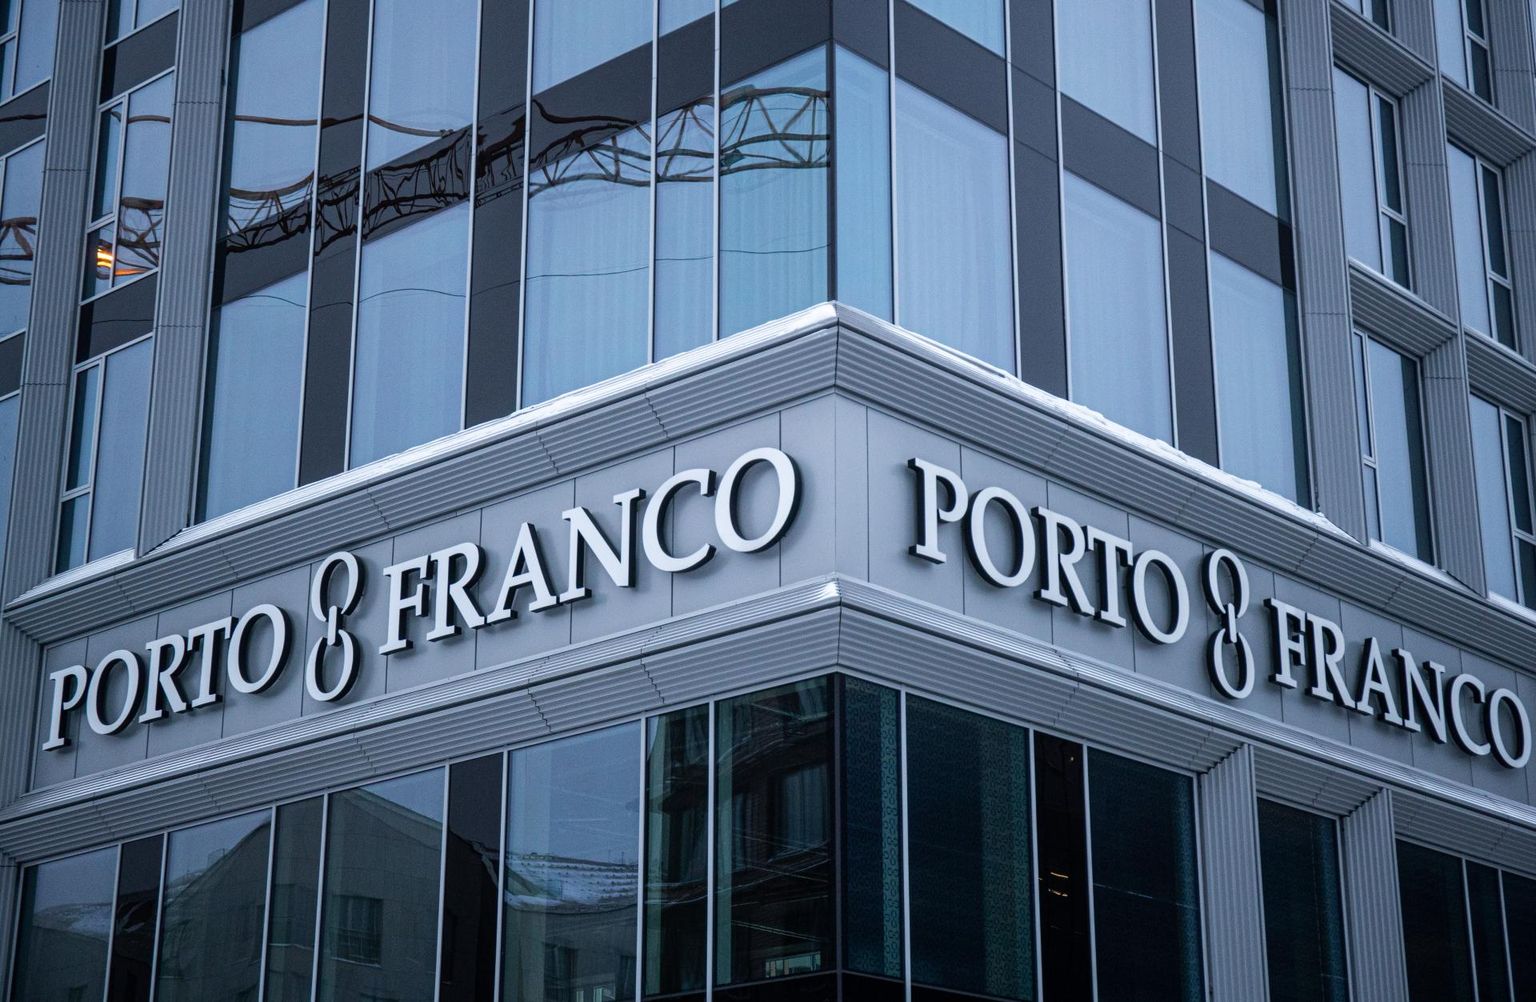 Porto Franco kohtuasja kahtlustused puudutavad nii mõjuvõimuga kauplemist kui rahapesu.